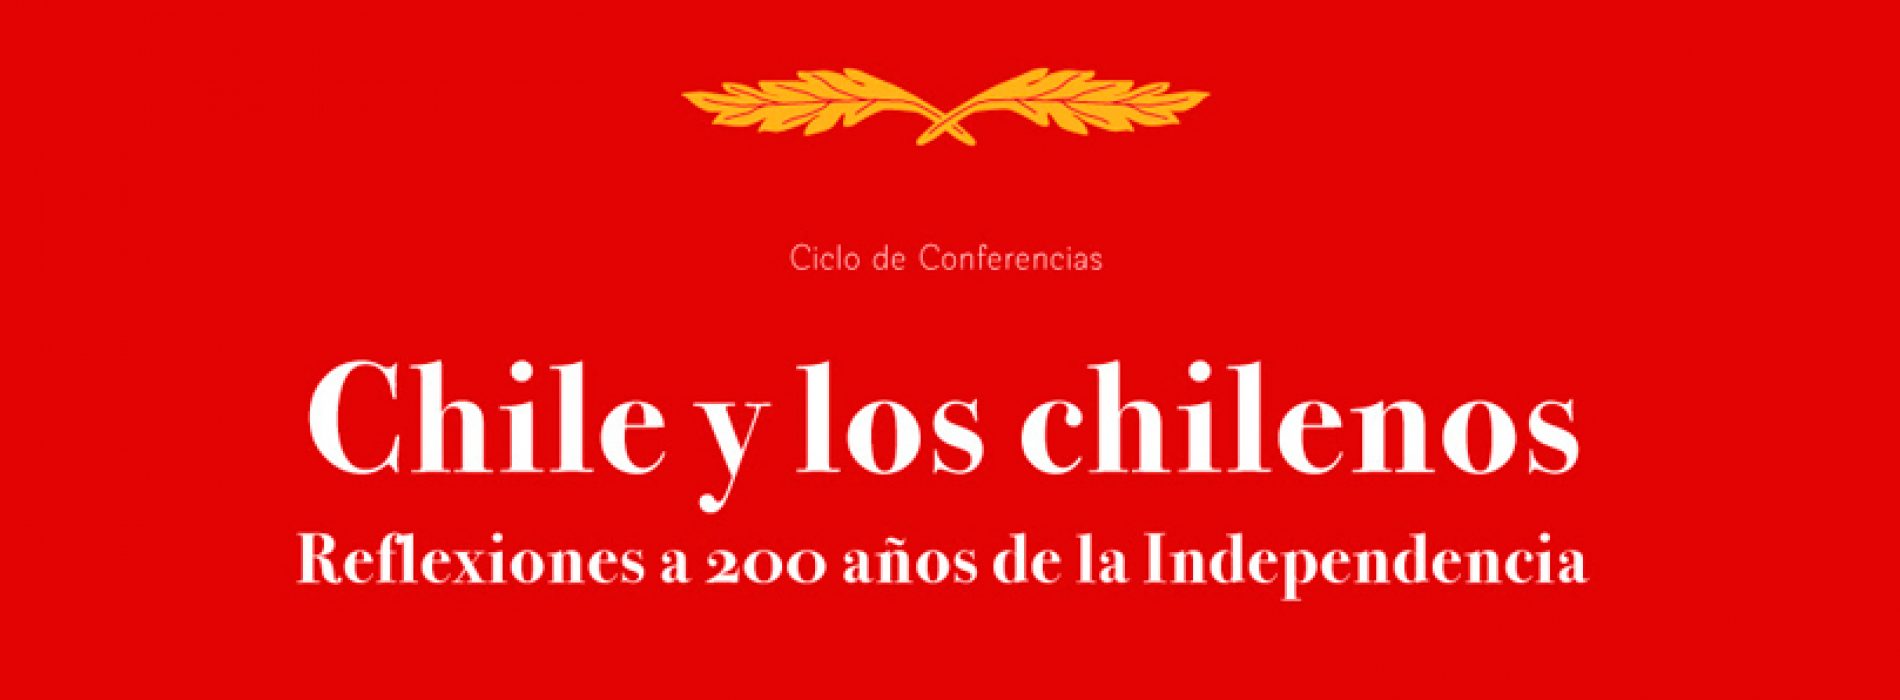 Ciclo de Conferencias: “Chile y los chilenos: Reflexiones a 200 años de la Independencia”